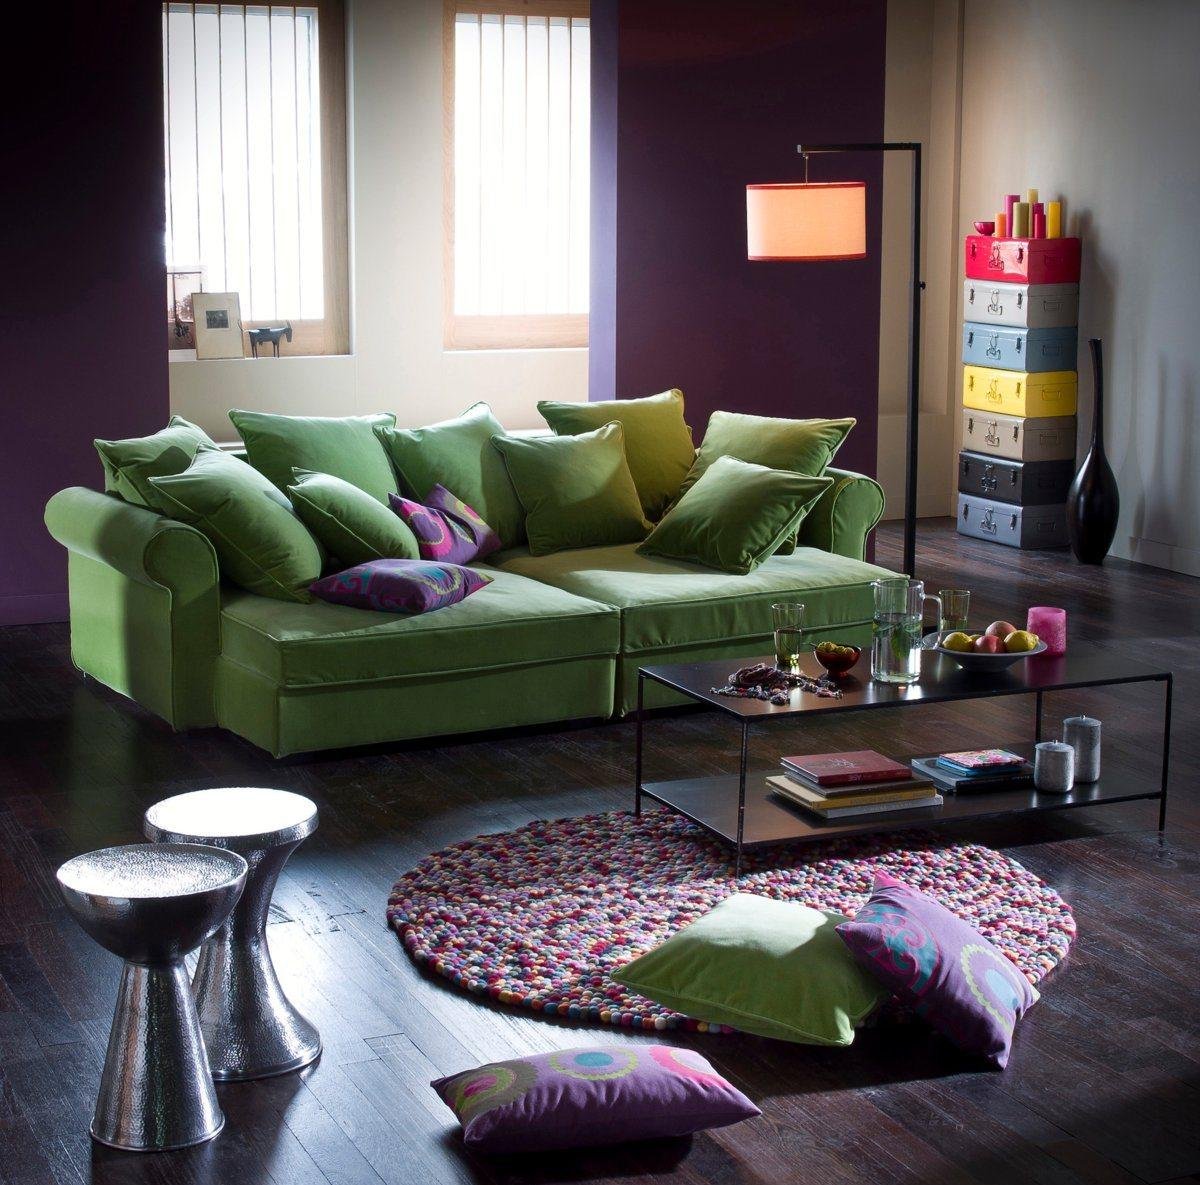 баклажановый диван в интерьере